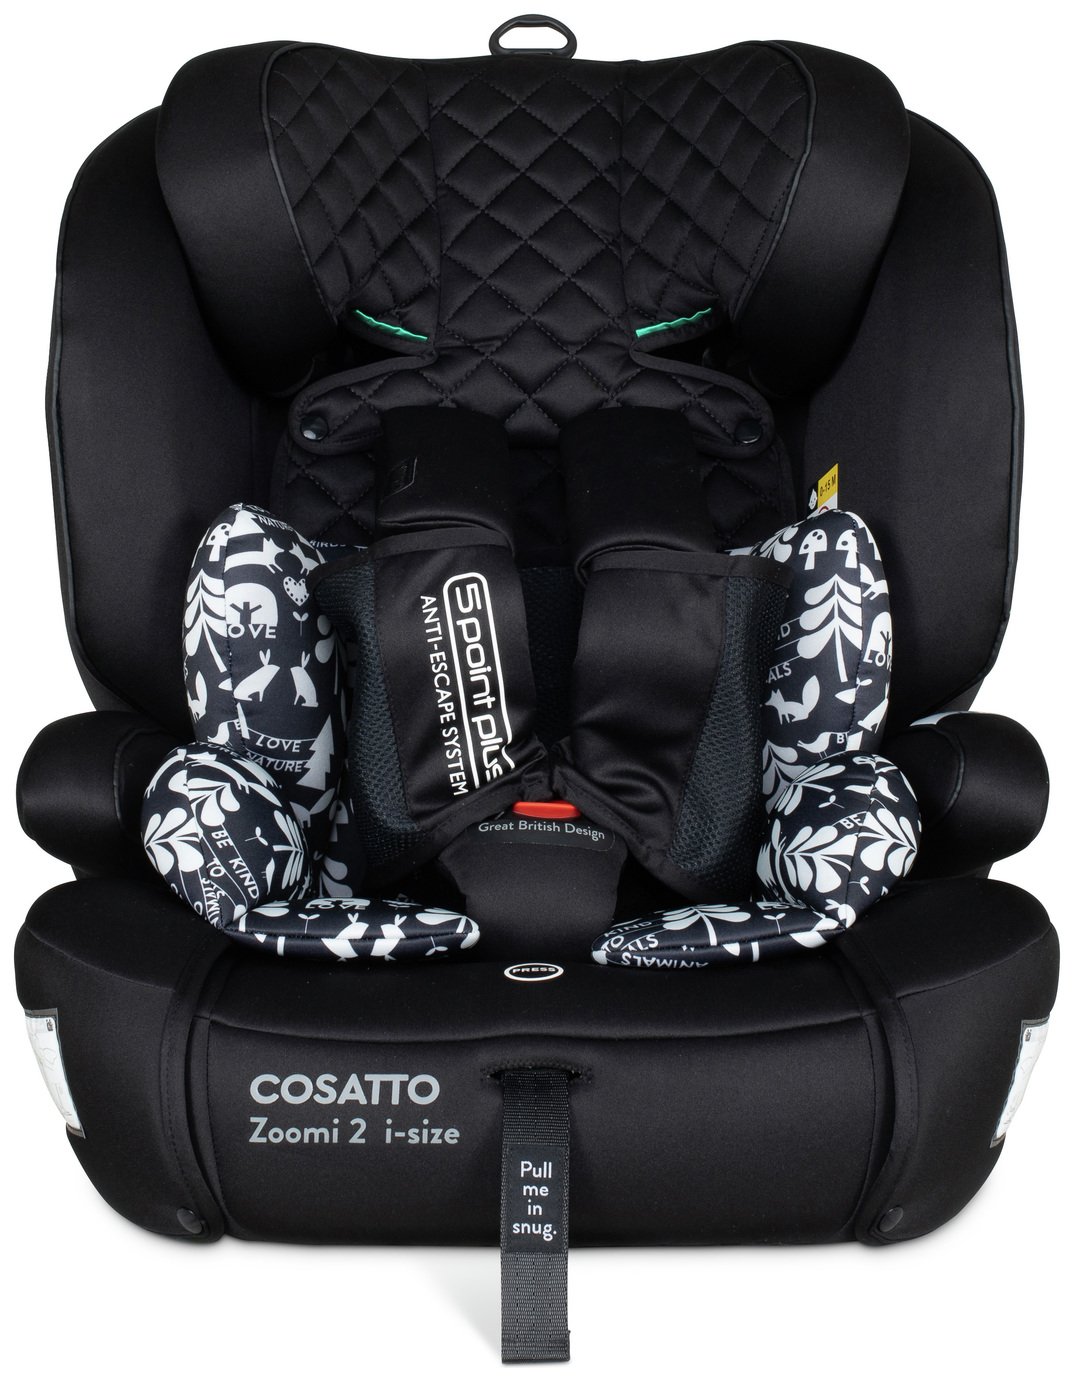 Cosatto Zoomi 2 Silhouette Car Seat